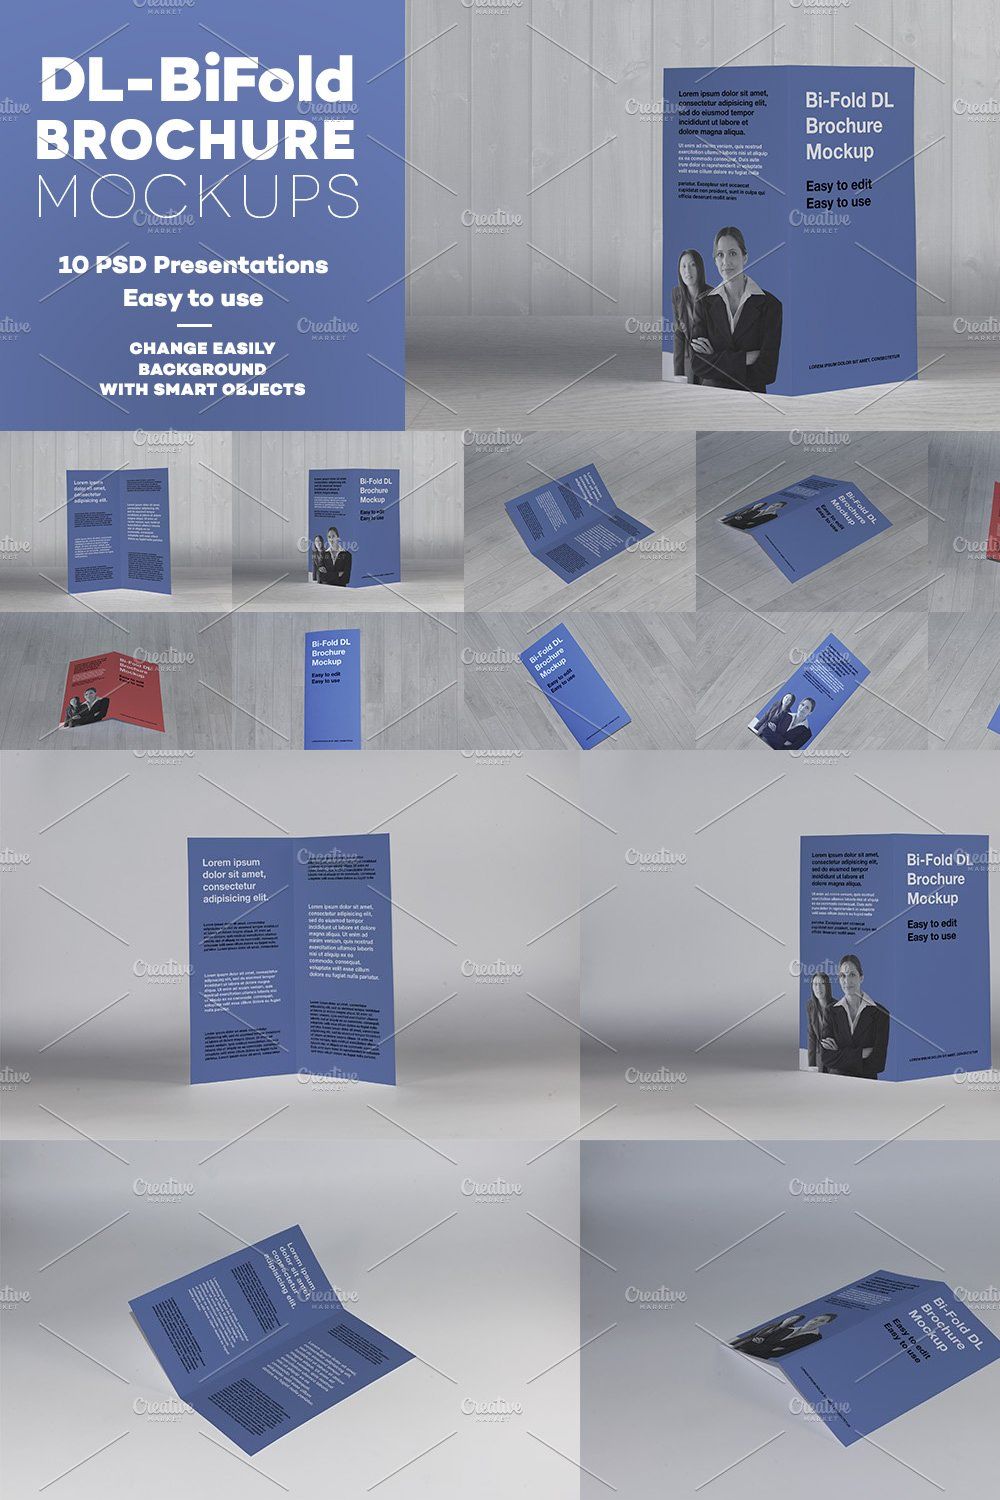 DL Bi-Fold Brochure Mockup pinterest preview image.